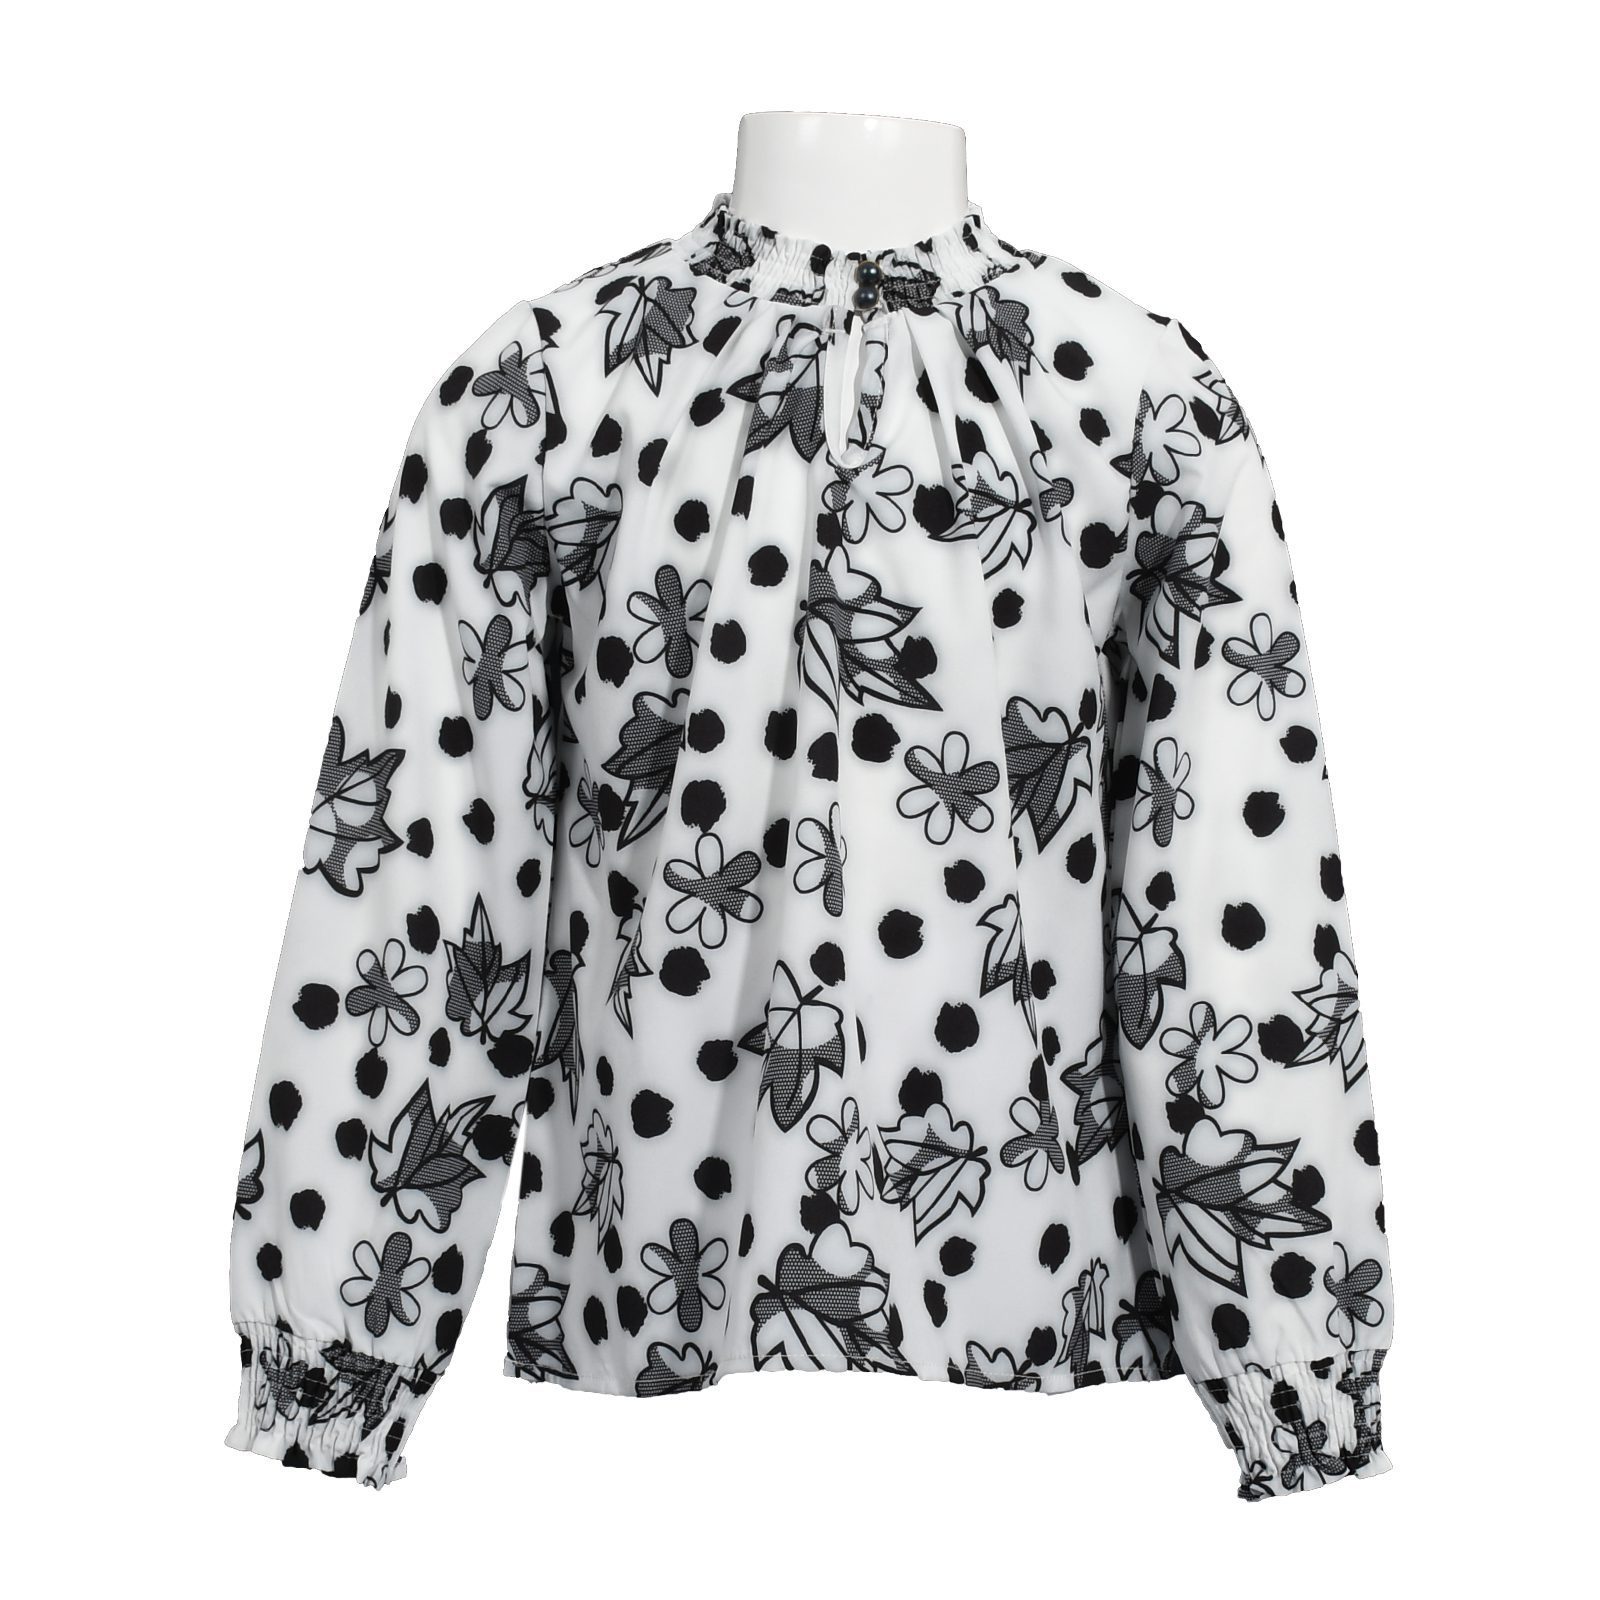 Unisex Long Sleeve Flowered Blouse With Pleat / 6Y | 7Y | 8Y | 9Y - Kids Fashion Turkey